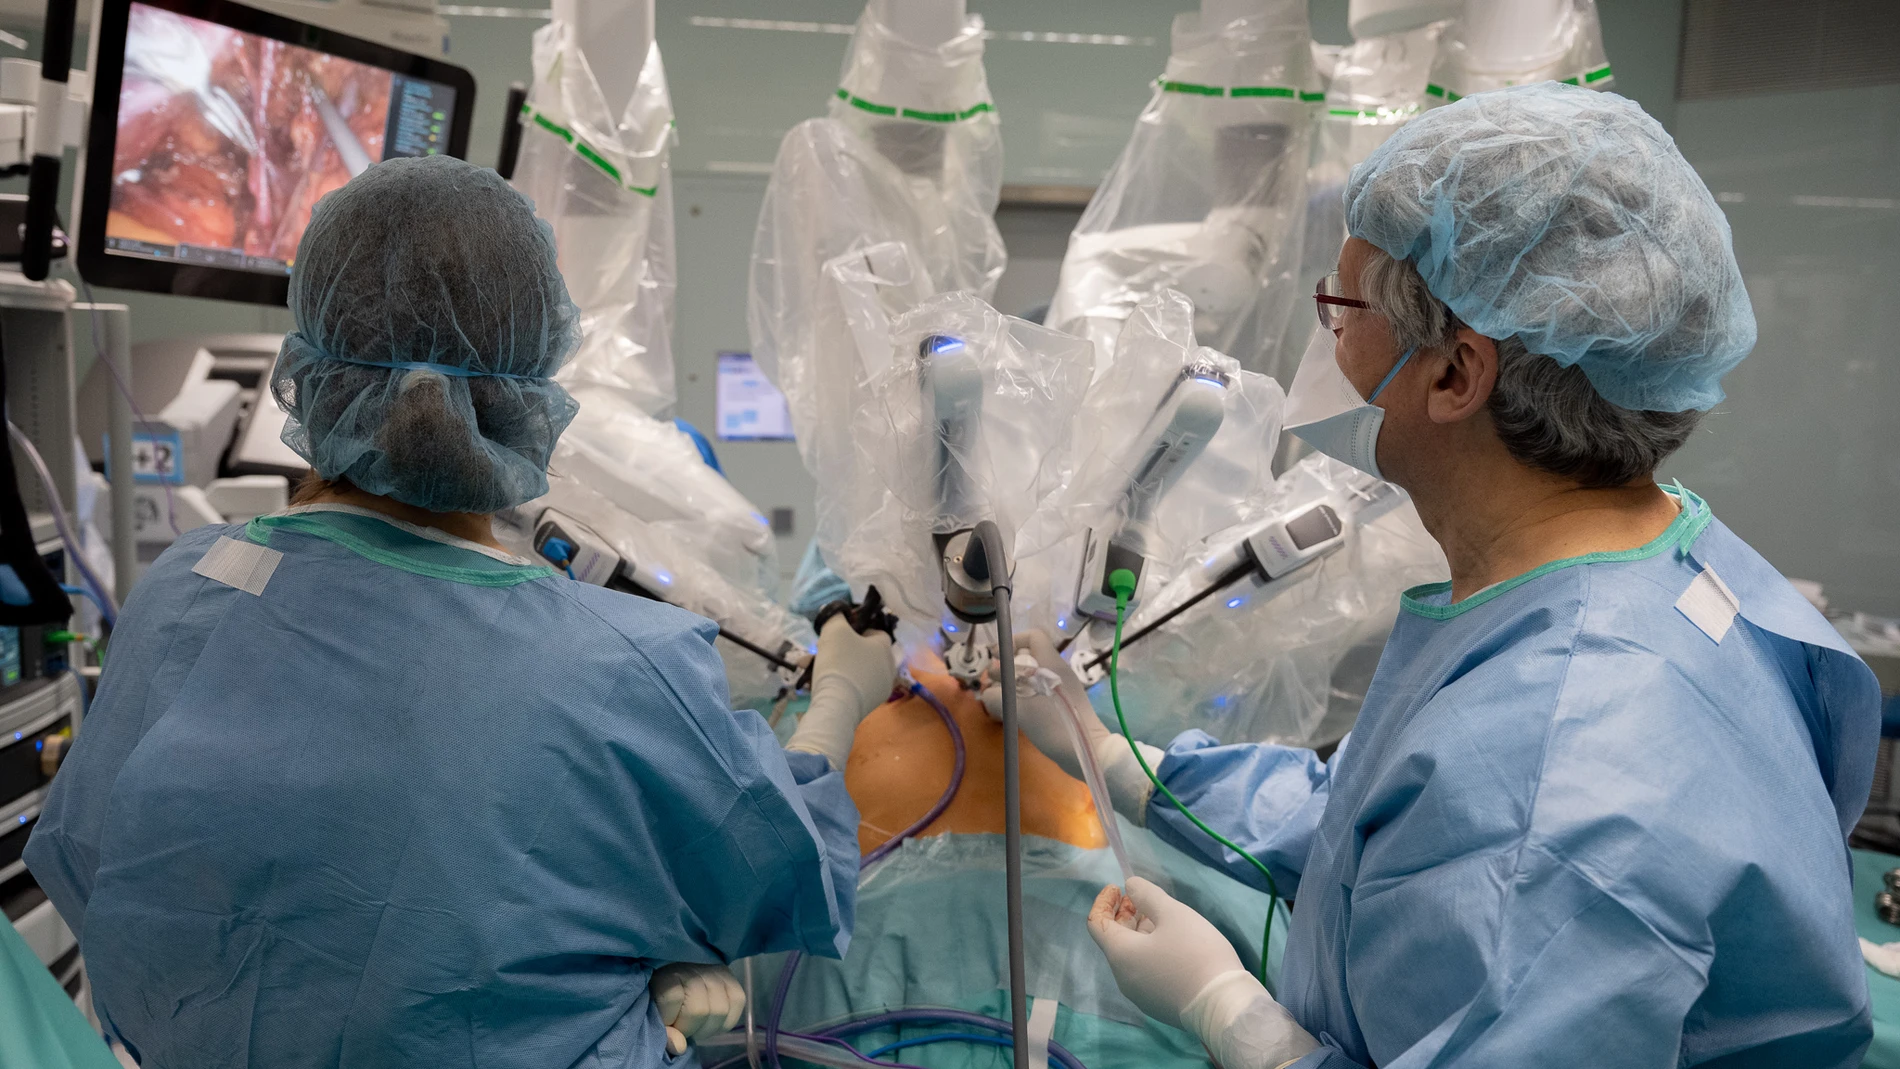 Cera de una veintena de profesionales, entre los que figuran siete cirujanos, participaron en la cirugía de trasplante de útero de Maira